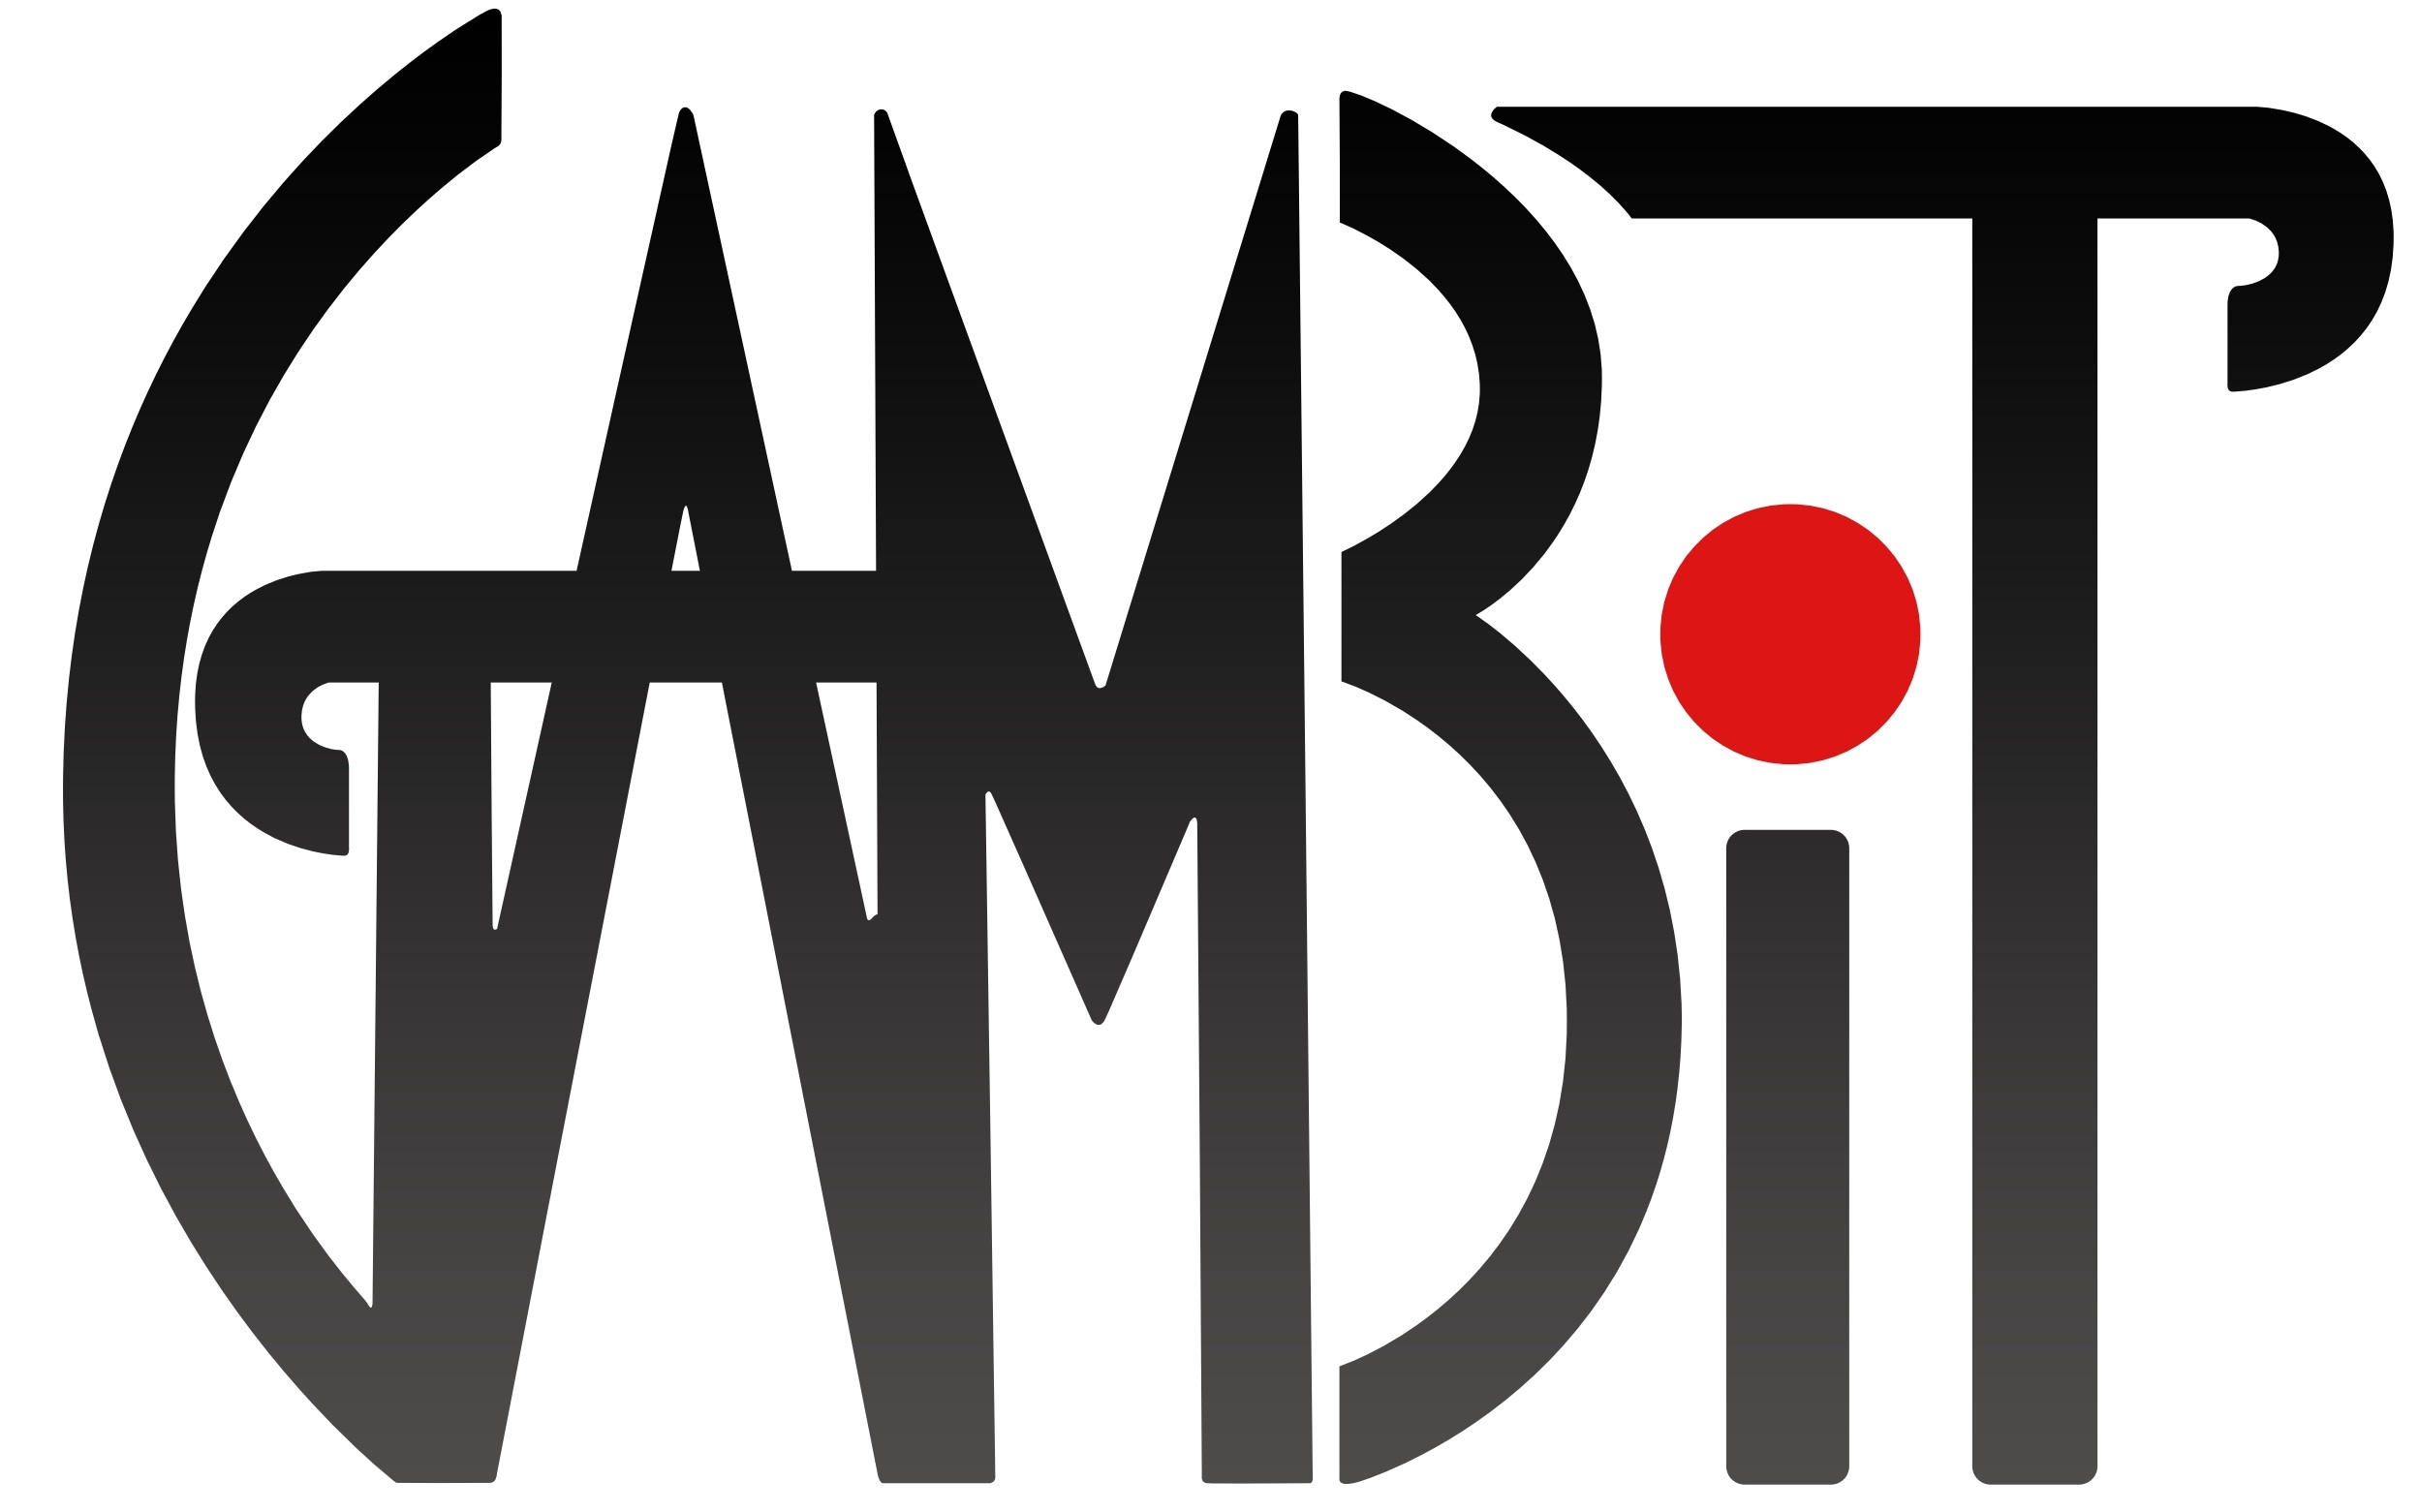 GAMBIT Logo.jpg 9ff365c439ebbde268ea5d0c5ef0a4cb